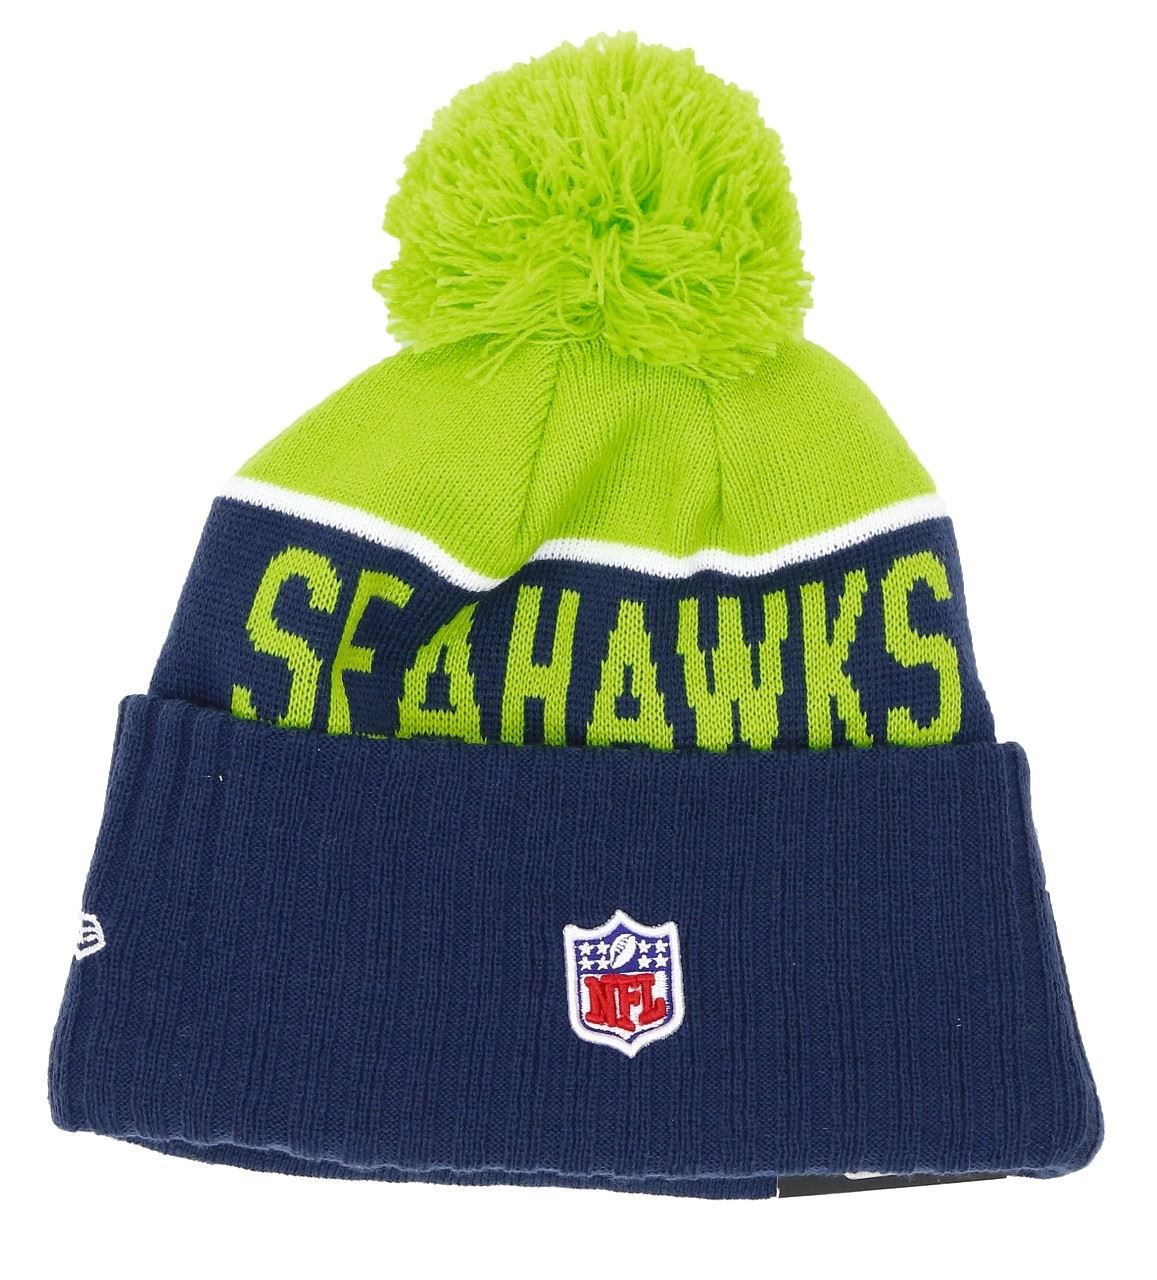 Seattle Seahawks NFL Sport Knit 2015 Beanie New Era